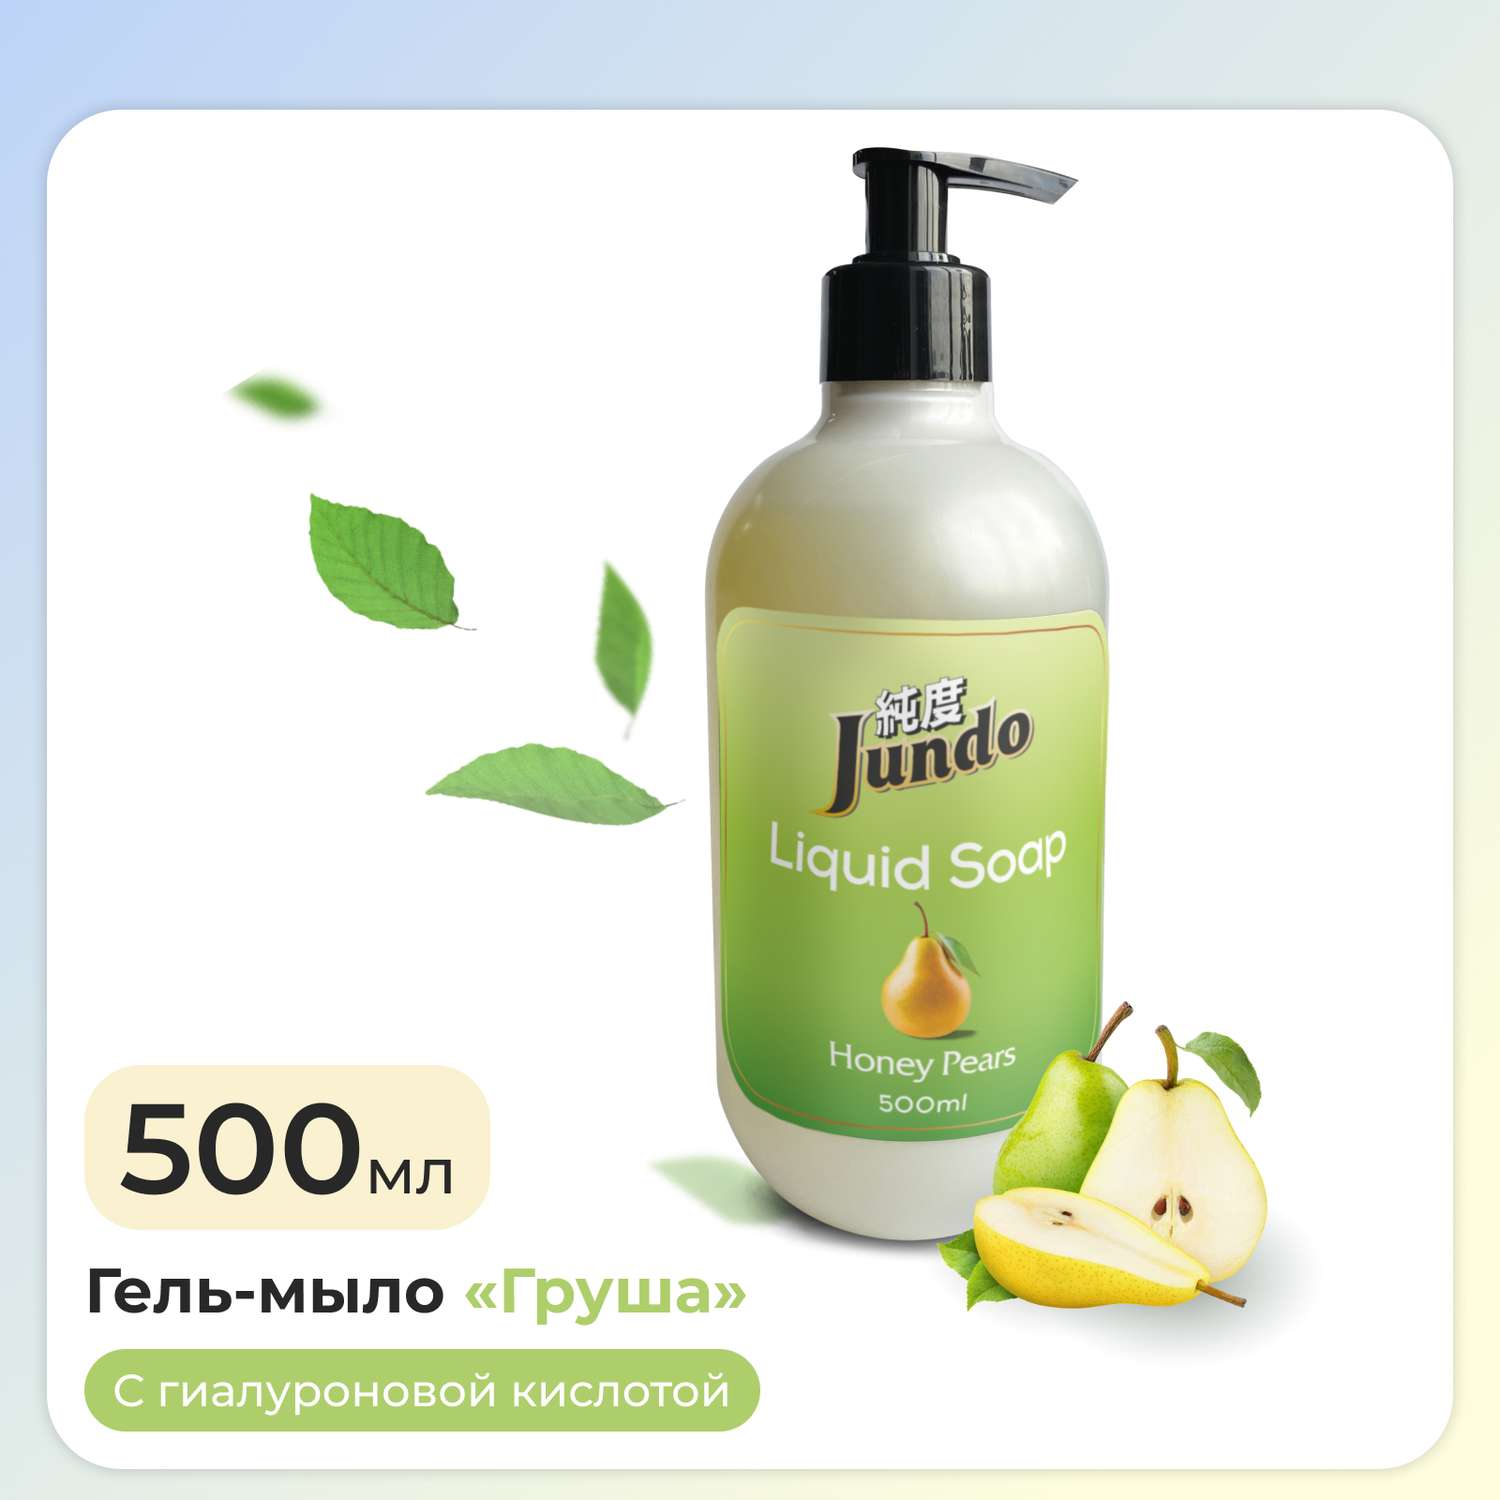 Жидкое гель-мыло для рук Jundo Honey pears 500 мл увлажняющее с ароматом груши с гиалуроновой кислотой - фото 1